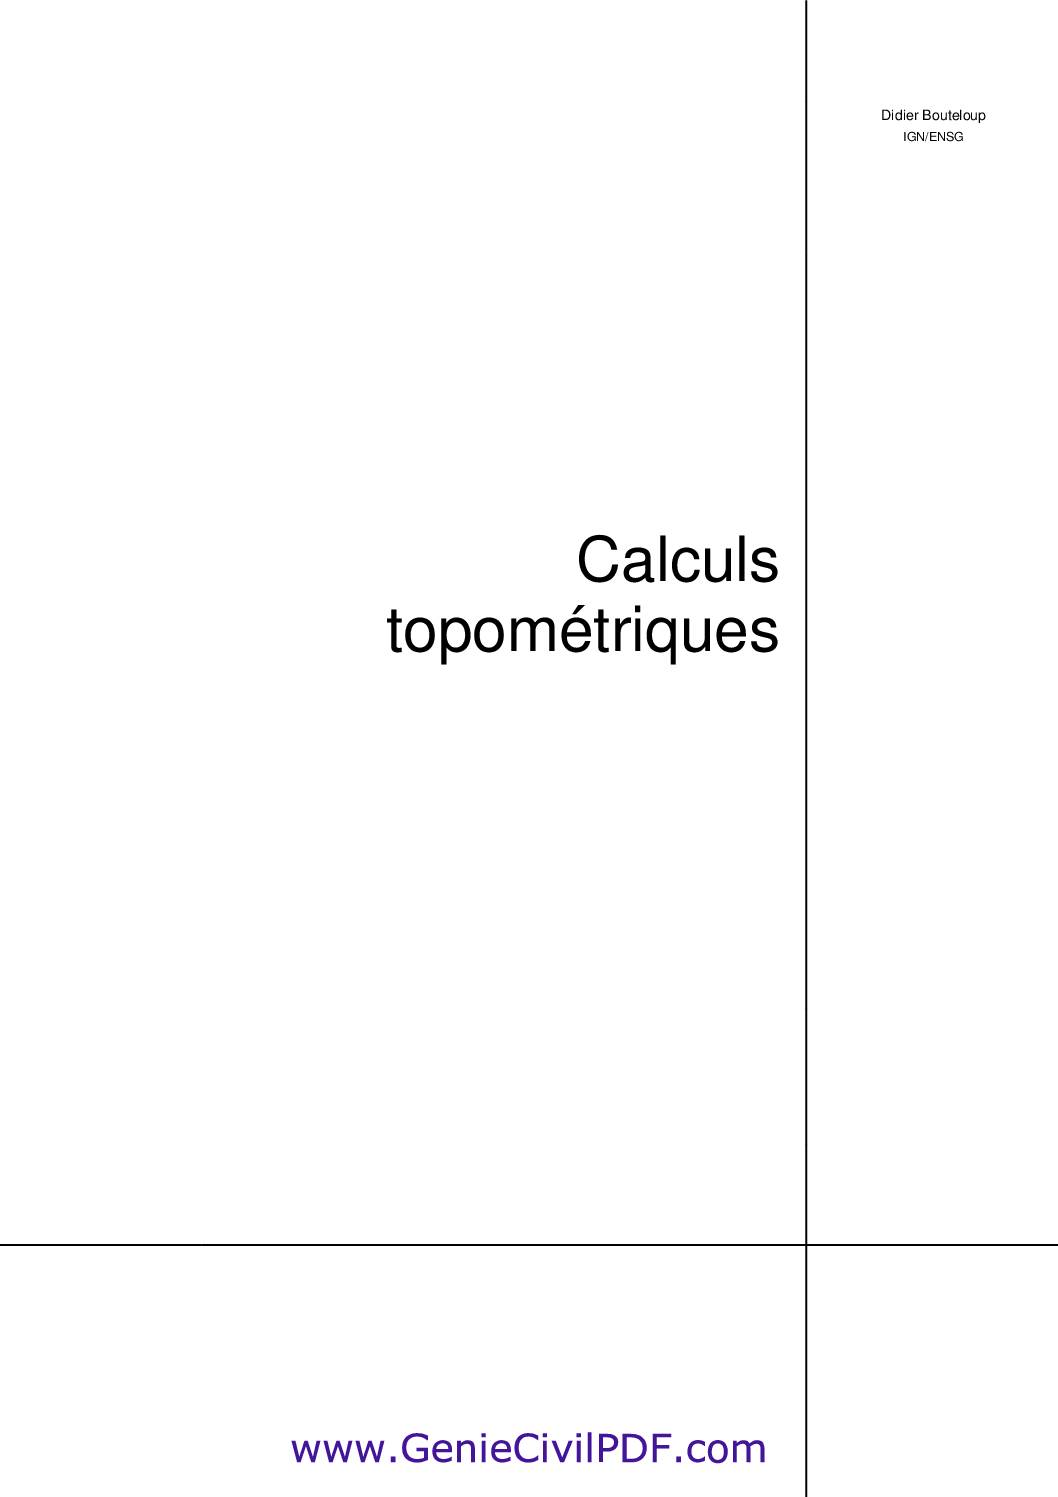 Calcul topométrique